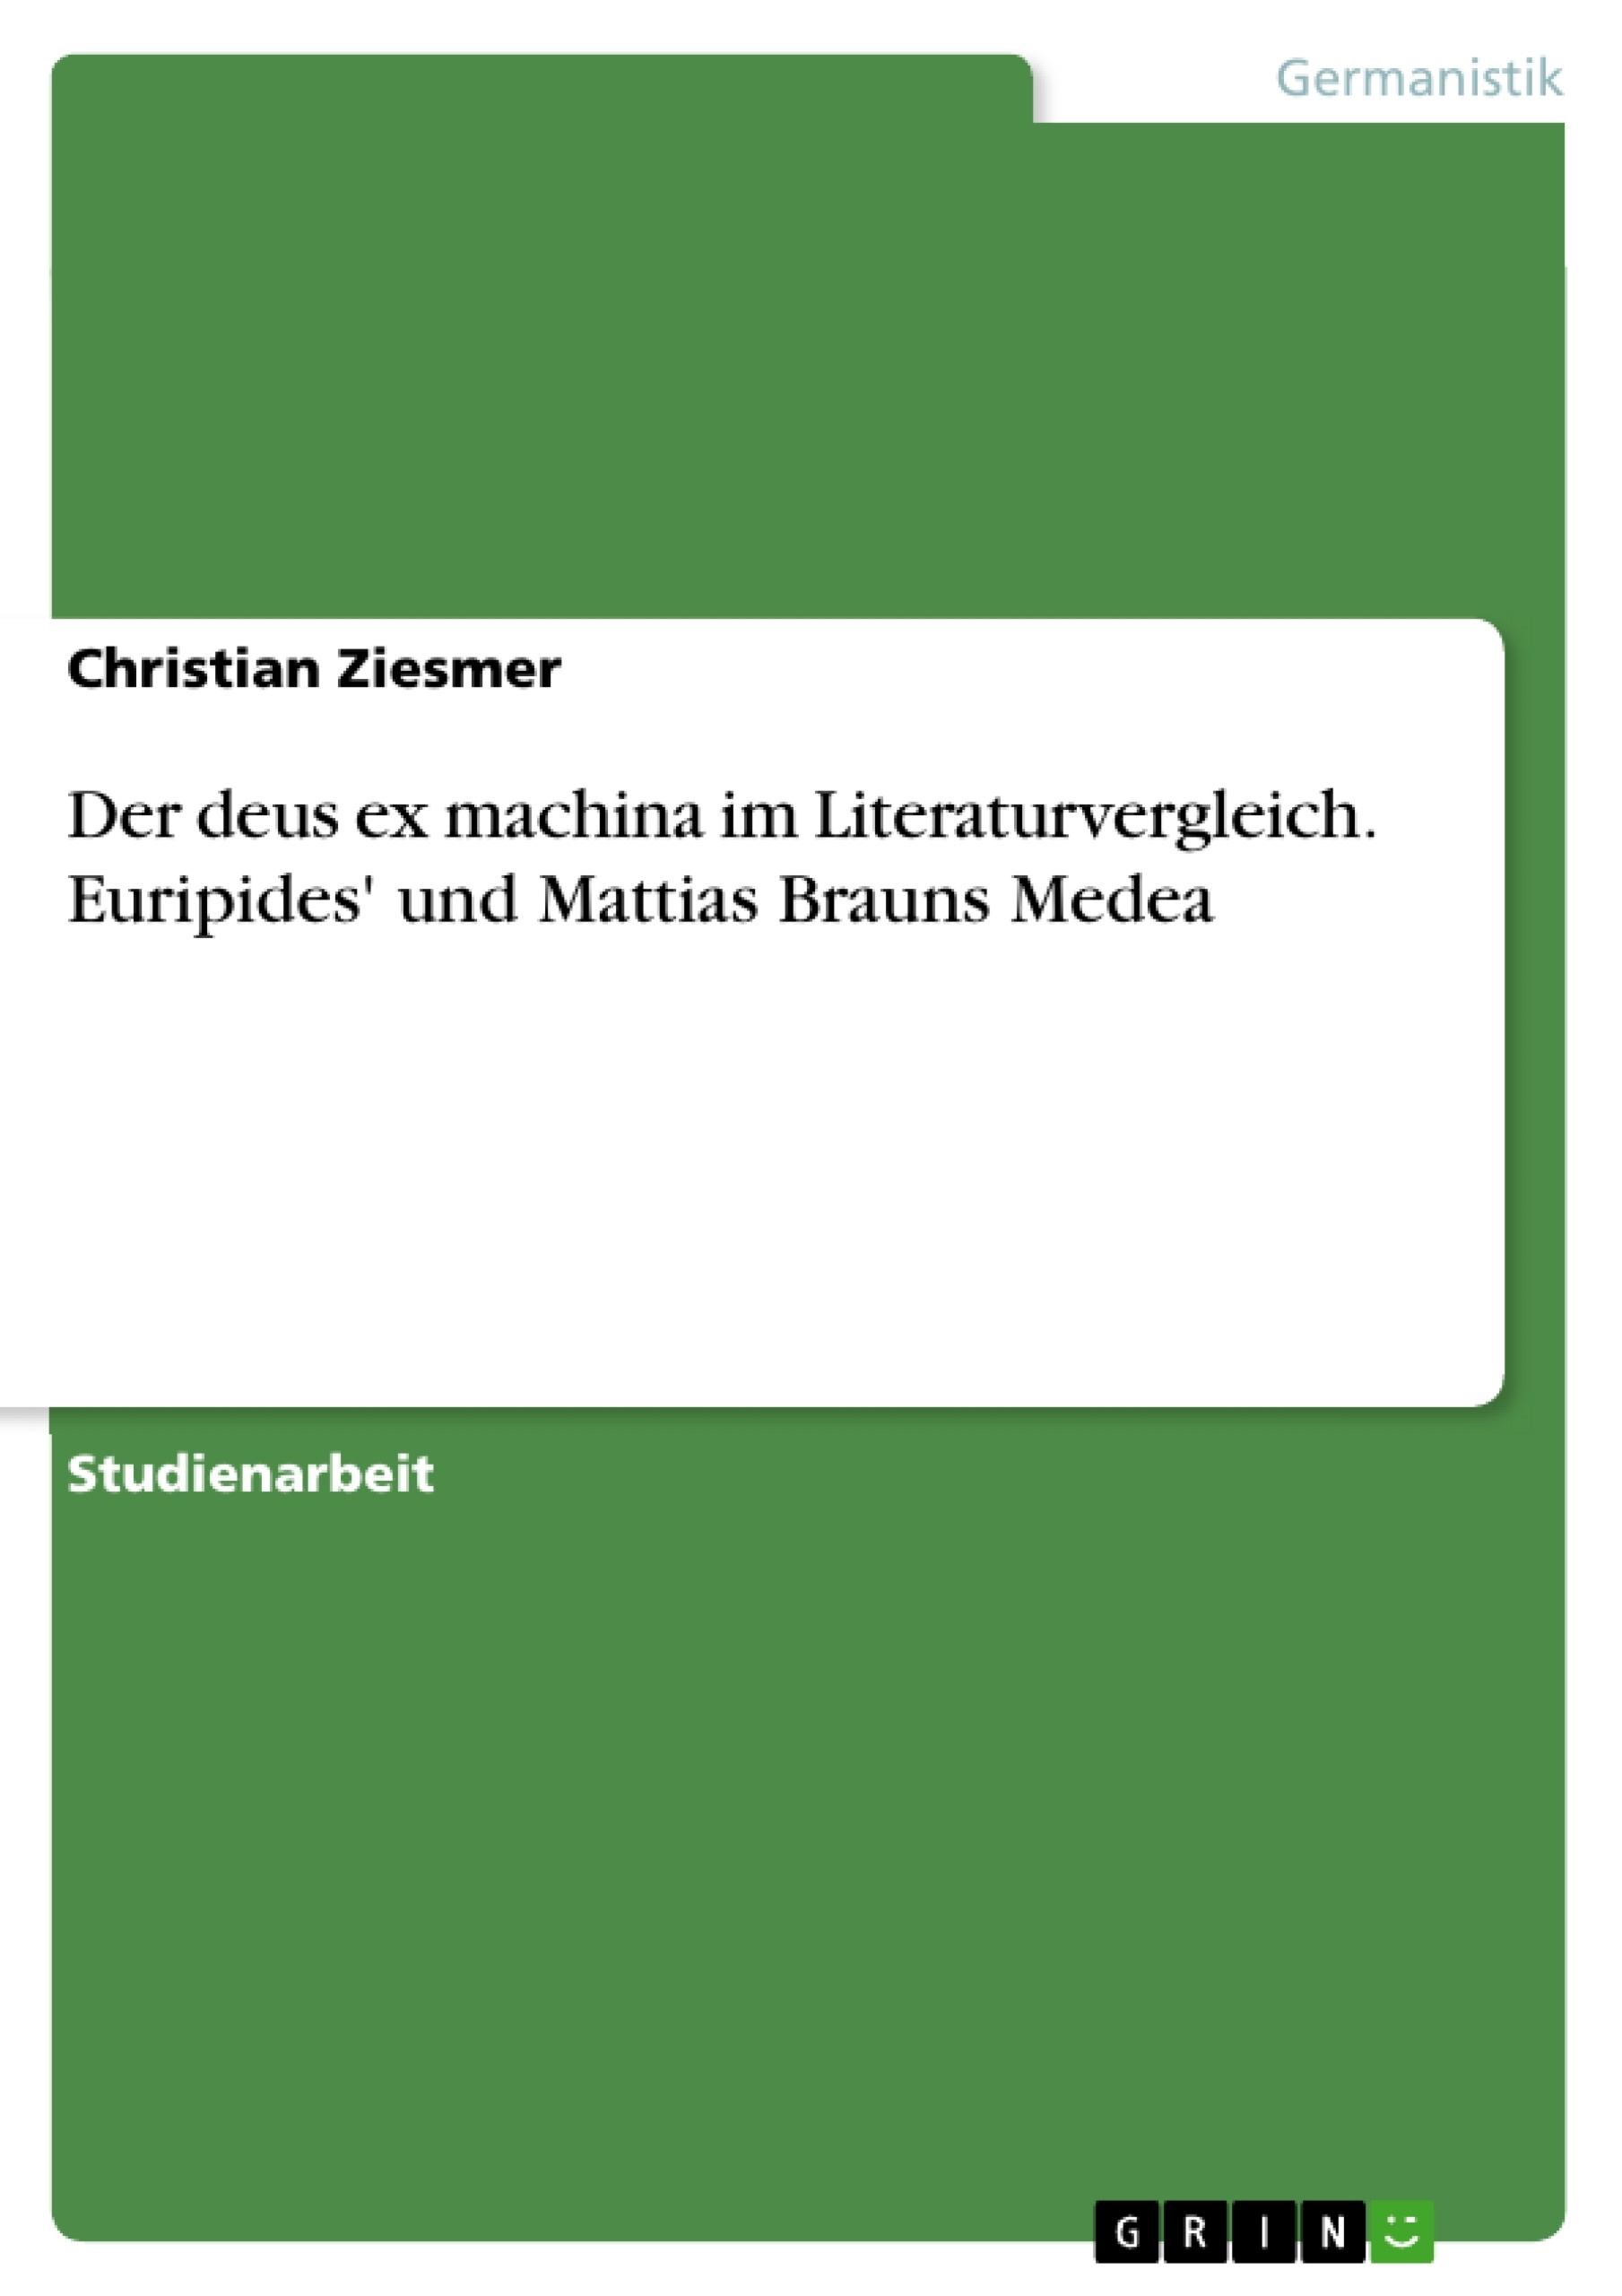 Título: Der deus ex machina im Literaturvergleich. Euripides' und Mattias Brauns Medea